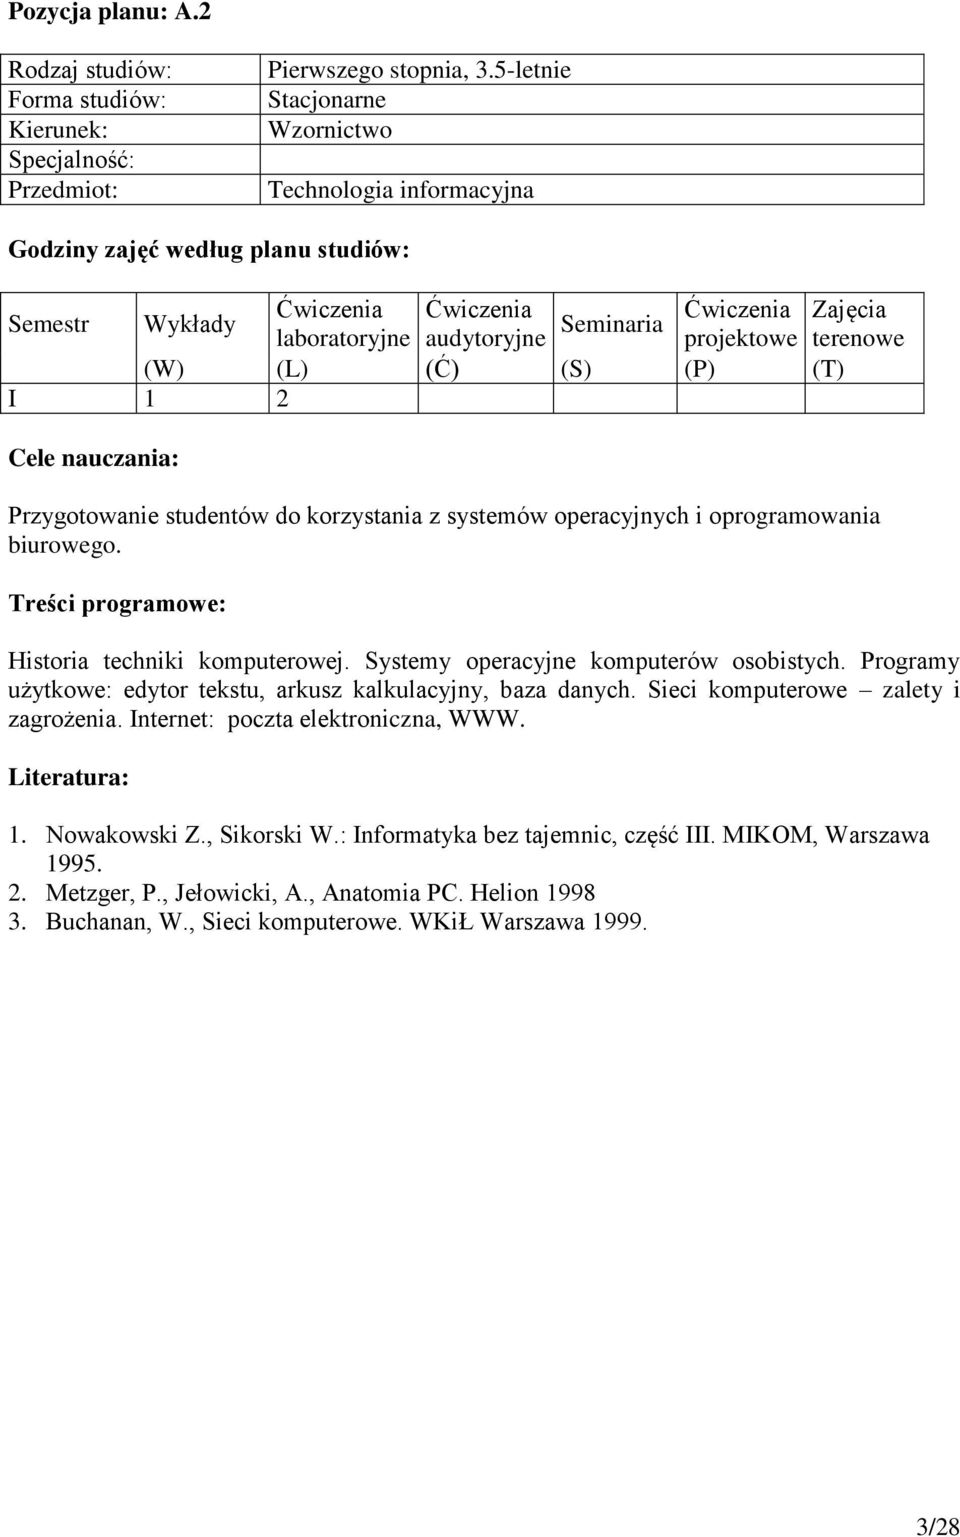 Sieci komputerowe zalety i zagrożenia. Internet: poczta elektroniczna, WWW. 1. Nowakowski Z., Sikorski W.